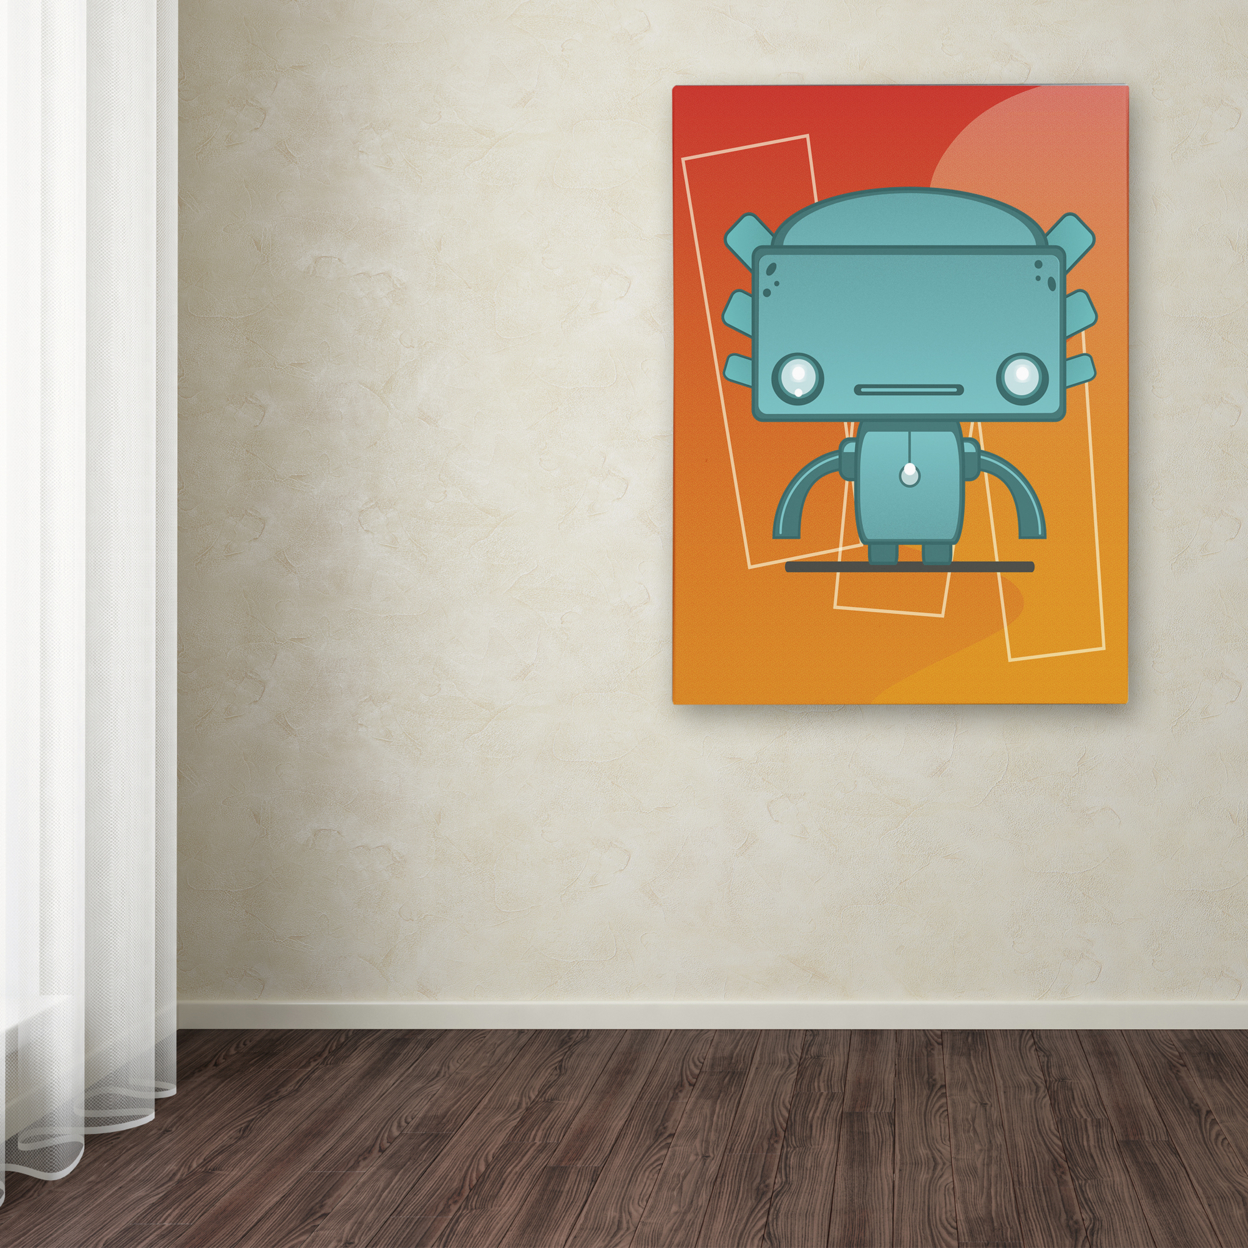 Craig Snodgrass 'Retro Robot Aqua' Canvas Wall Art 35 X 47 Inches